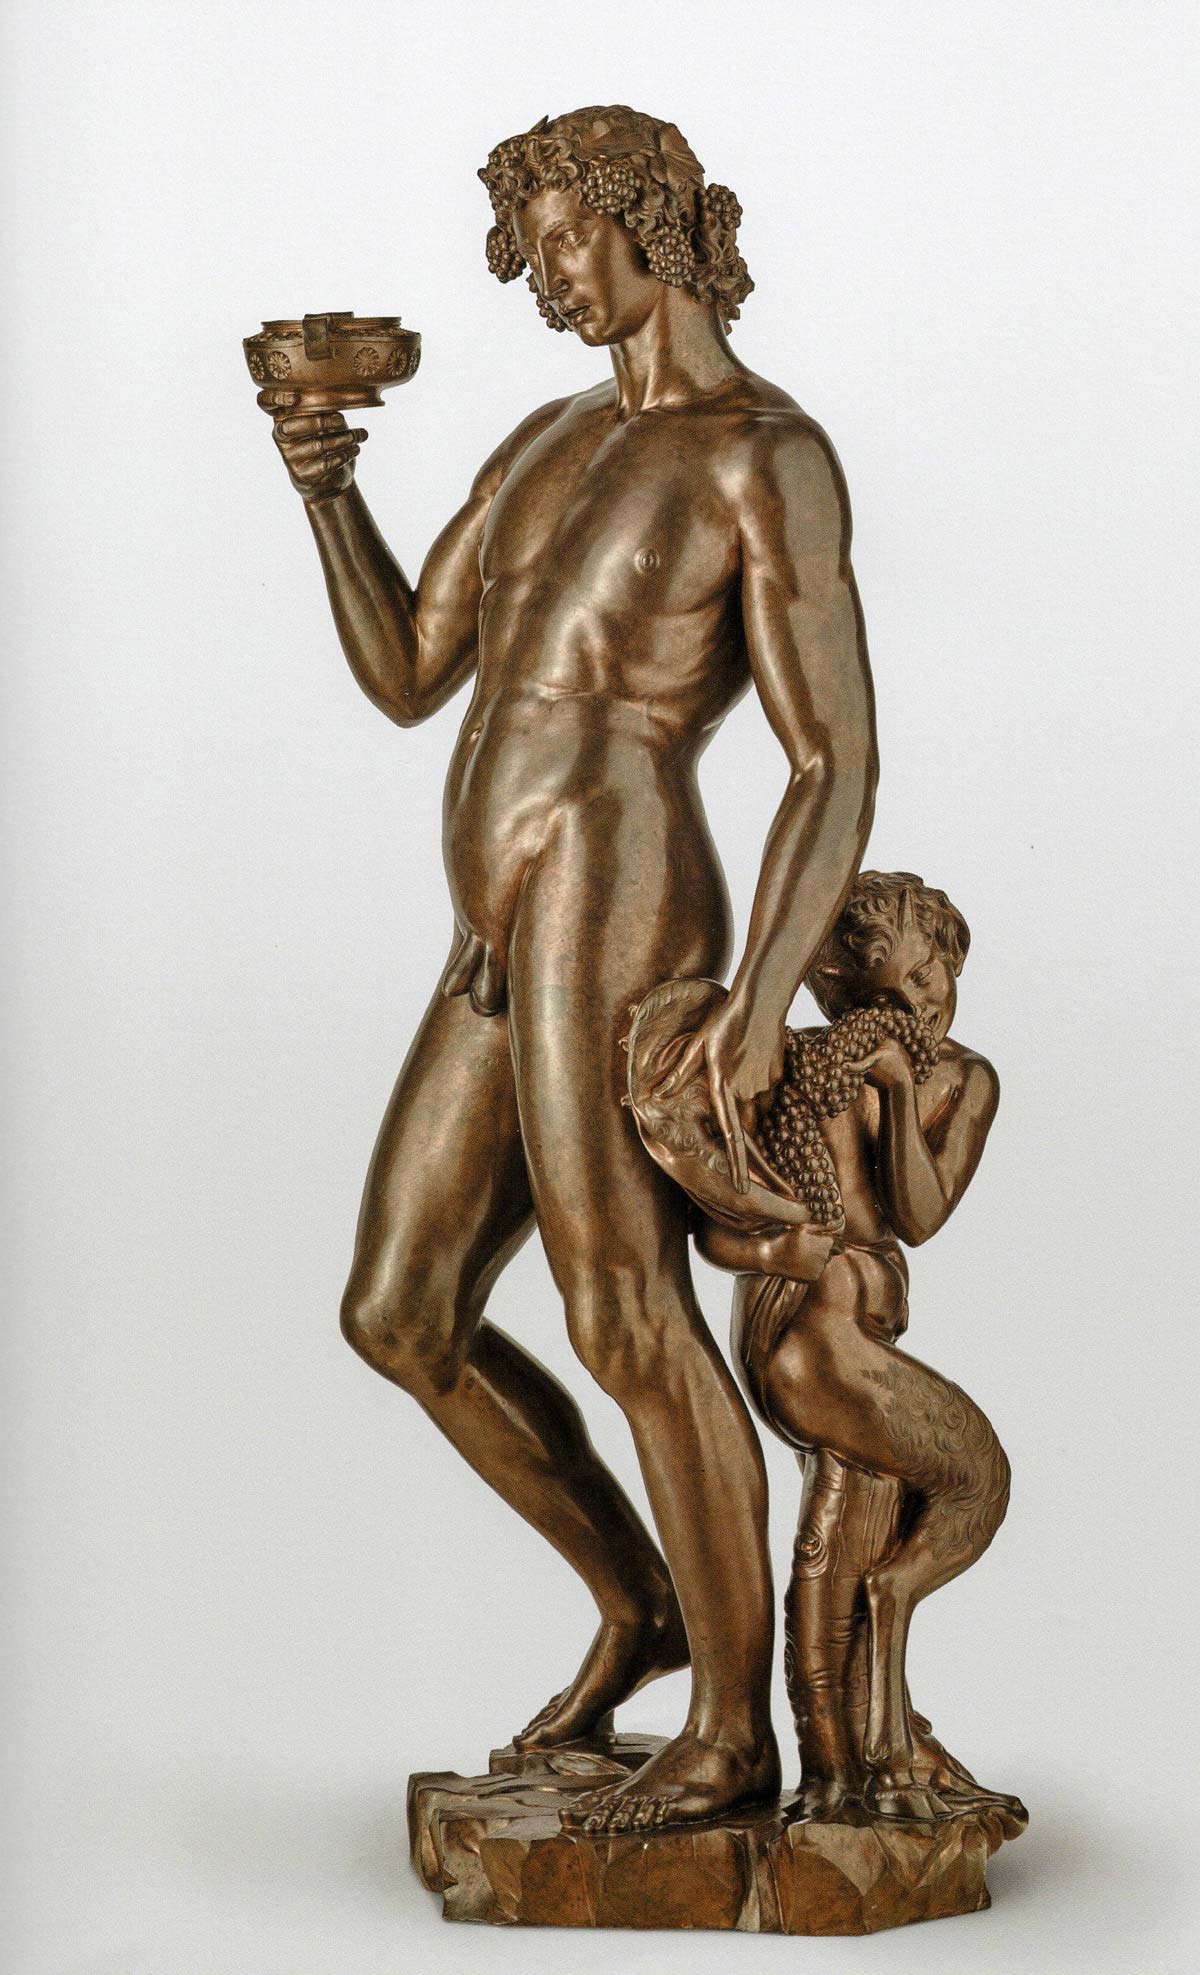 fusioni postume fonderia artistica ferdinando marinelli firenze repliche originali classici rinascimetali statue bronzo